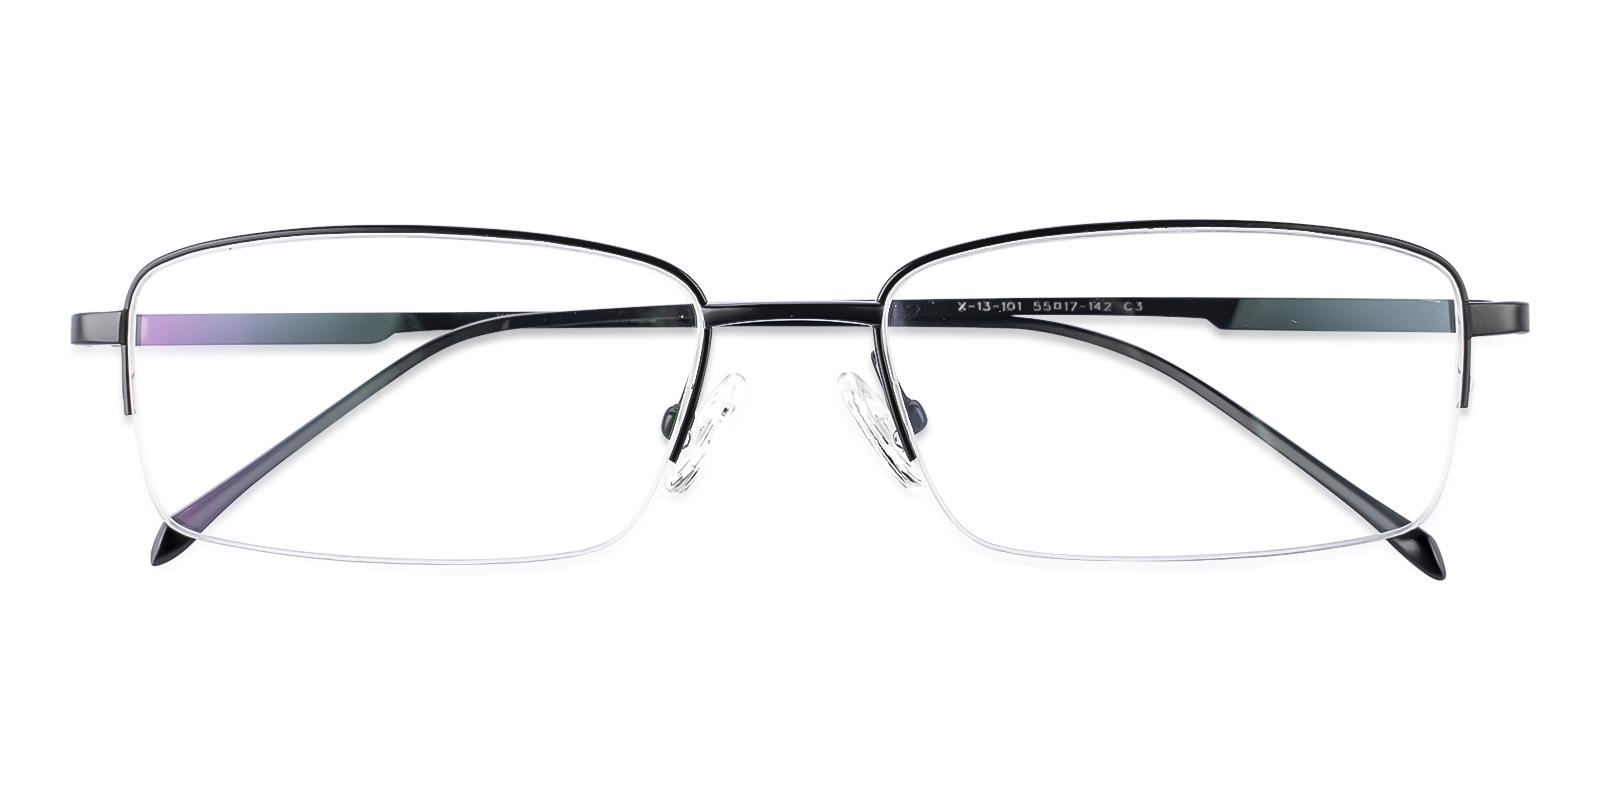 Mammoar Black Titanium Eyeglasses , NosePads Frames from ABBE Glasses